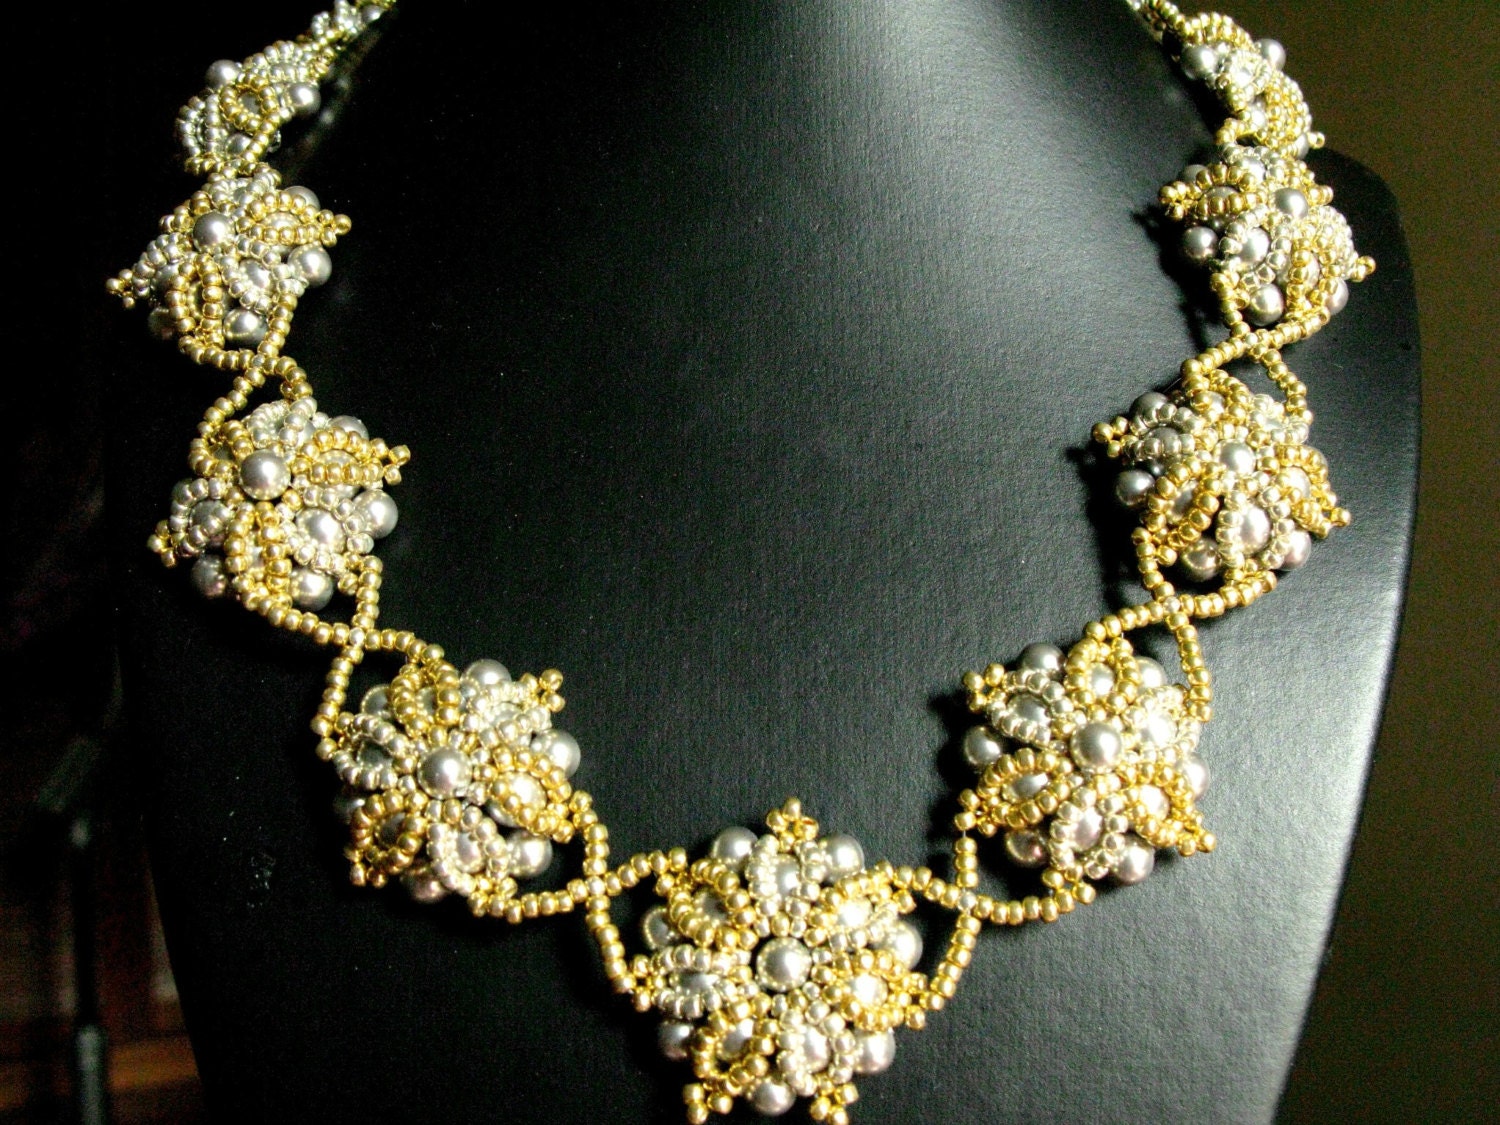 Swarovski crystal wedding necklace statement bridal jewelry | Gorgeous ...